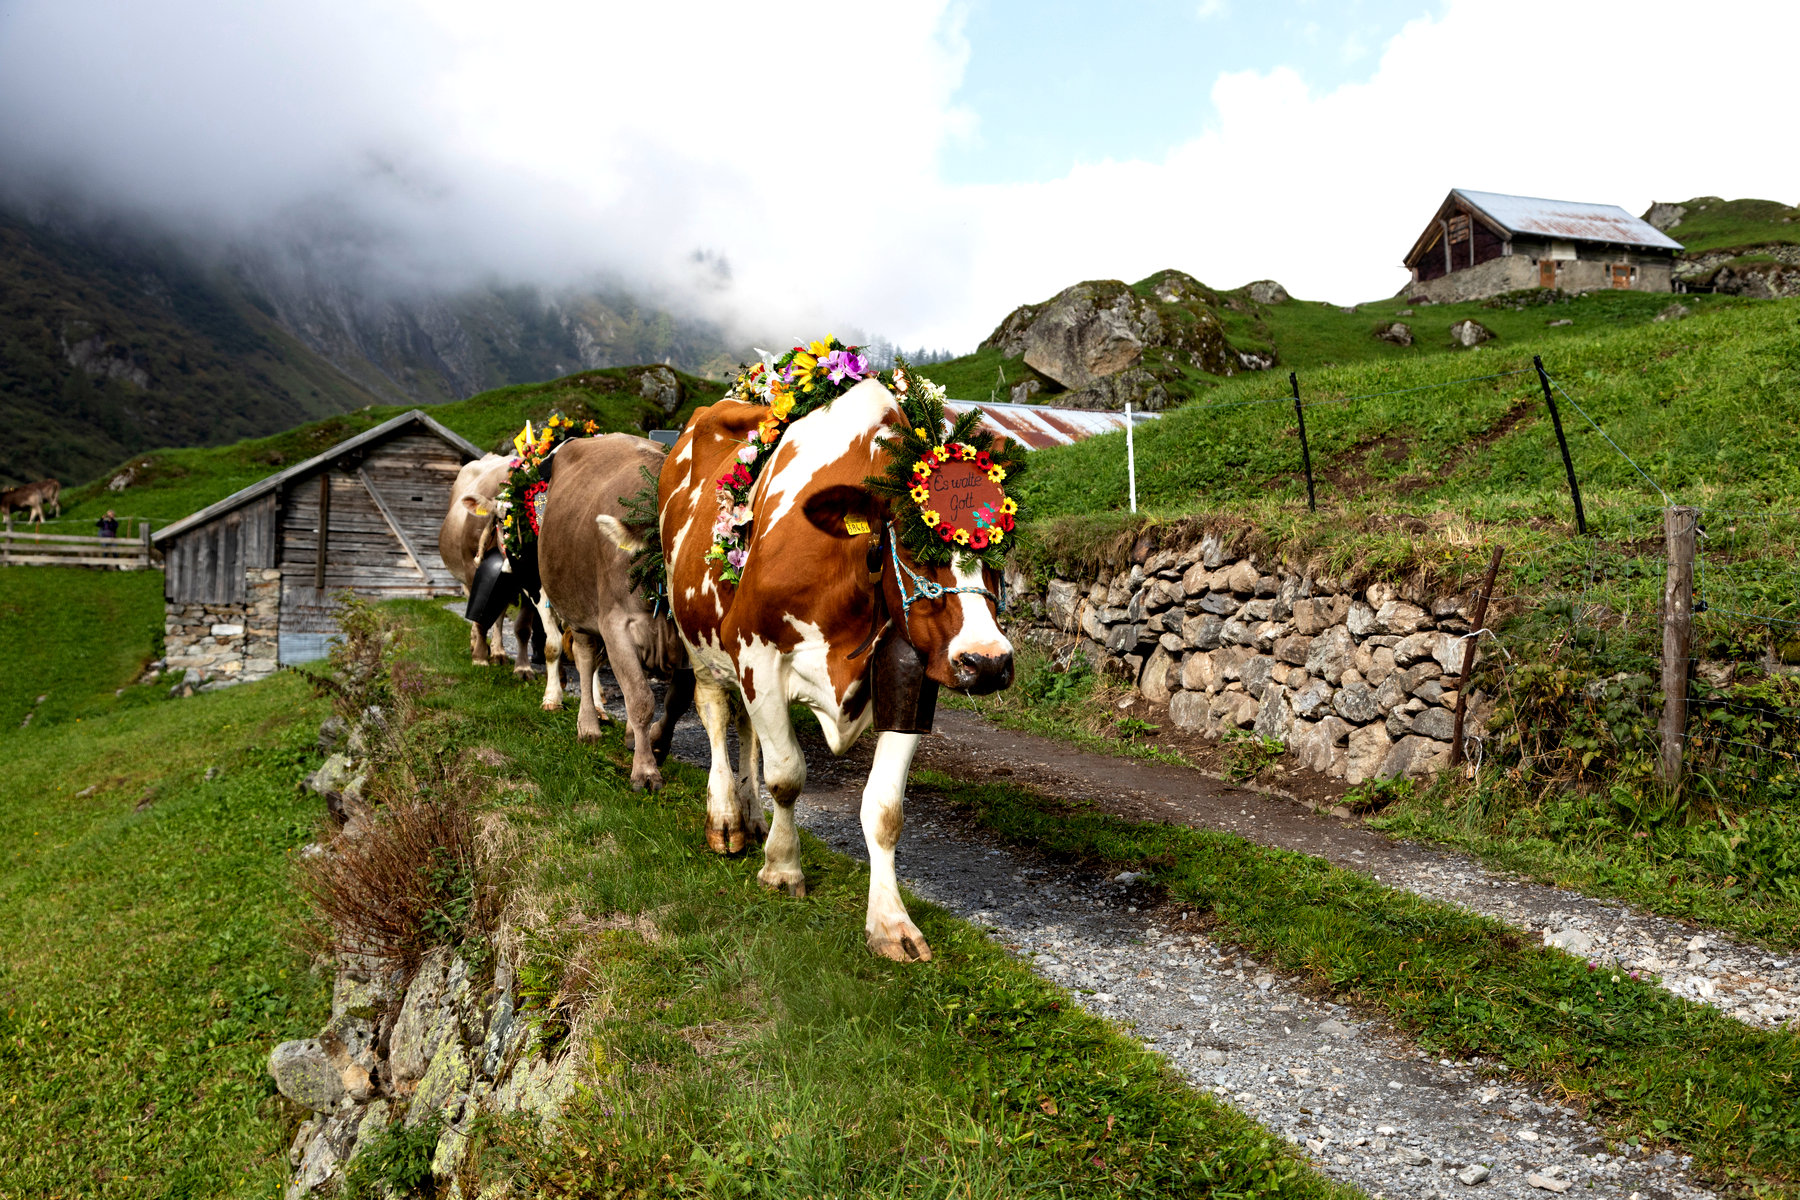 Alpabfahrt (или Désalpe) – парад коров в цветочных головных уборах и больших звенящих коровьих колокольчиках.